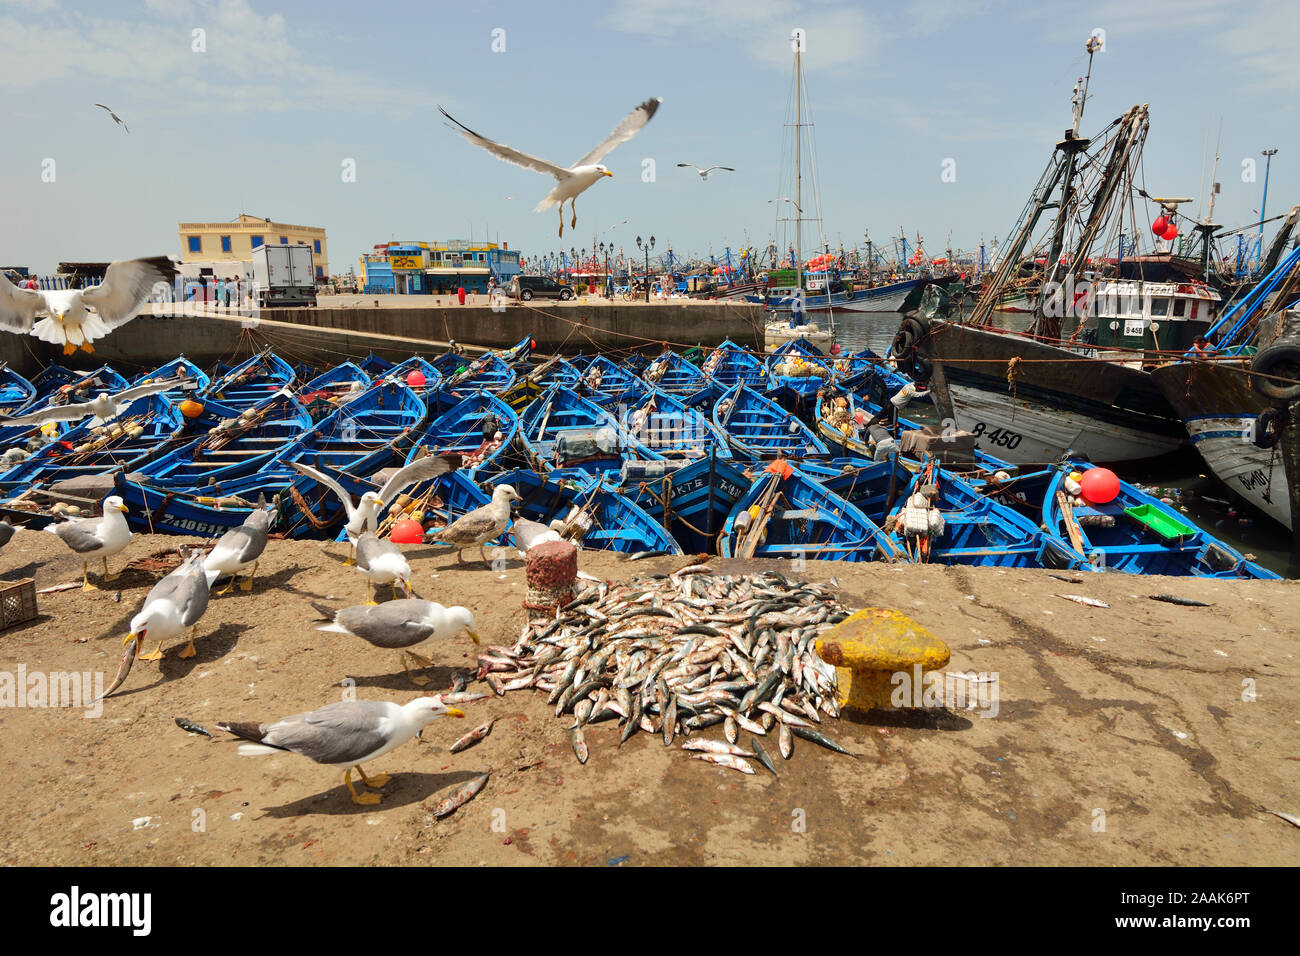 Les mouettes dans le port de pêche d'Essaouira. Maroc Banque D'Images